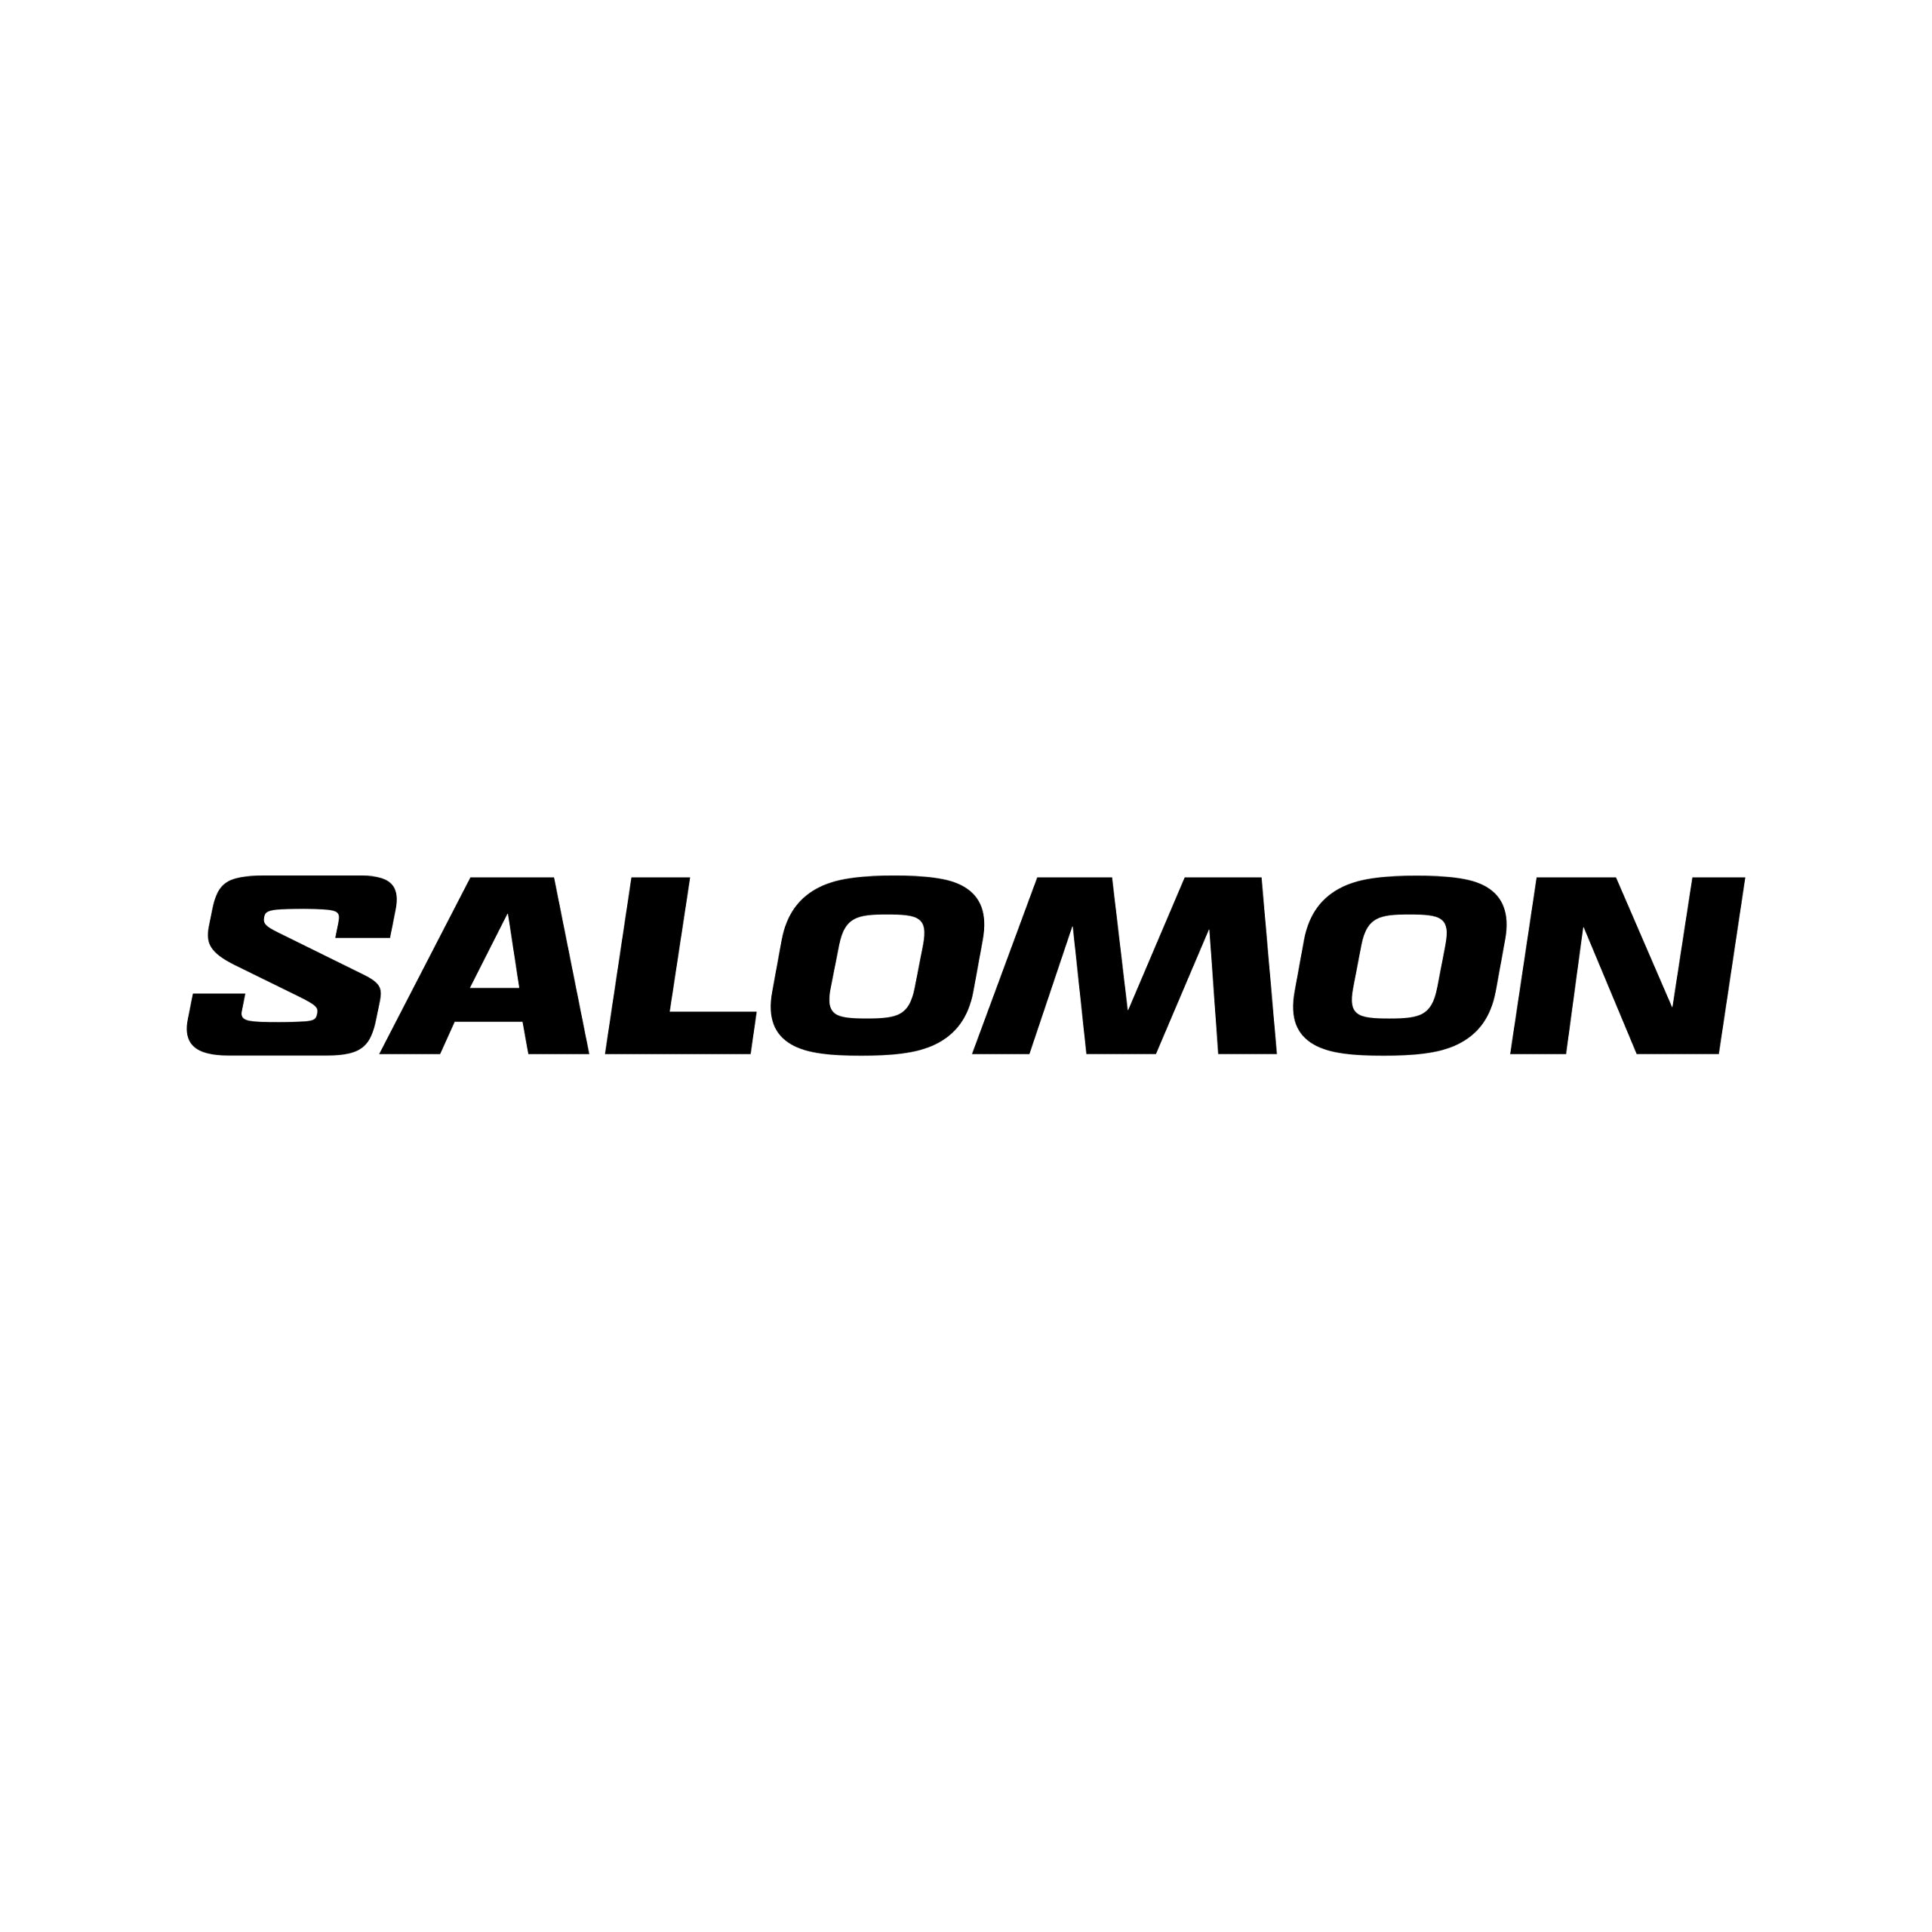 Salomon – 頁面： 4 - Cam2 越野跑用品專門店